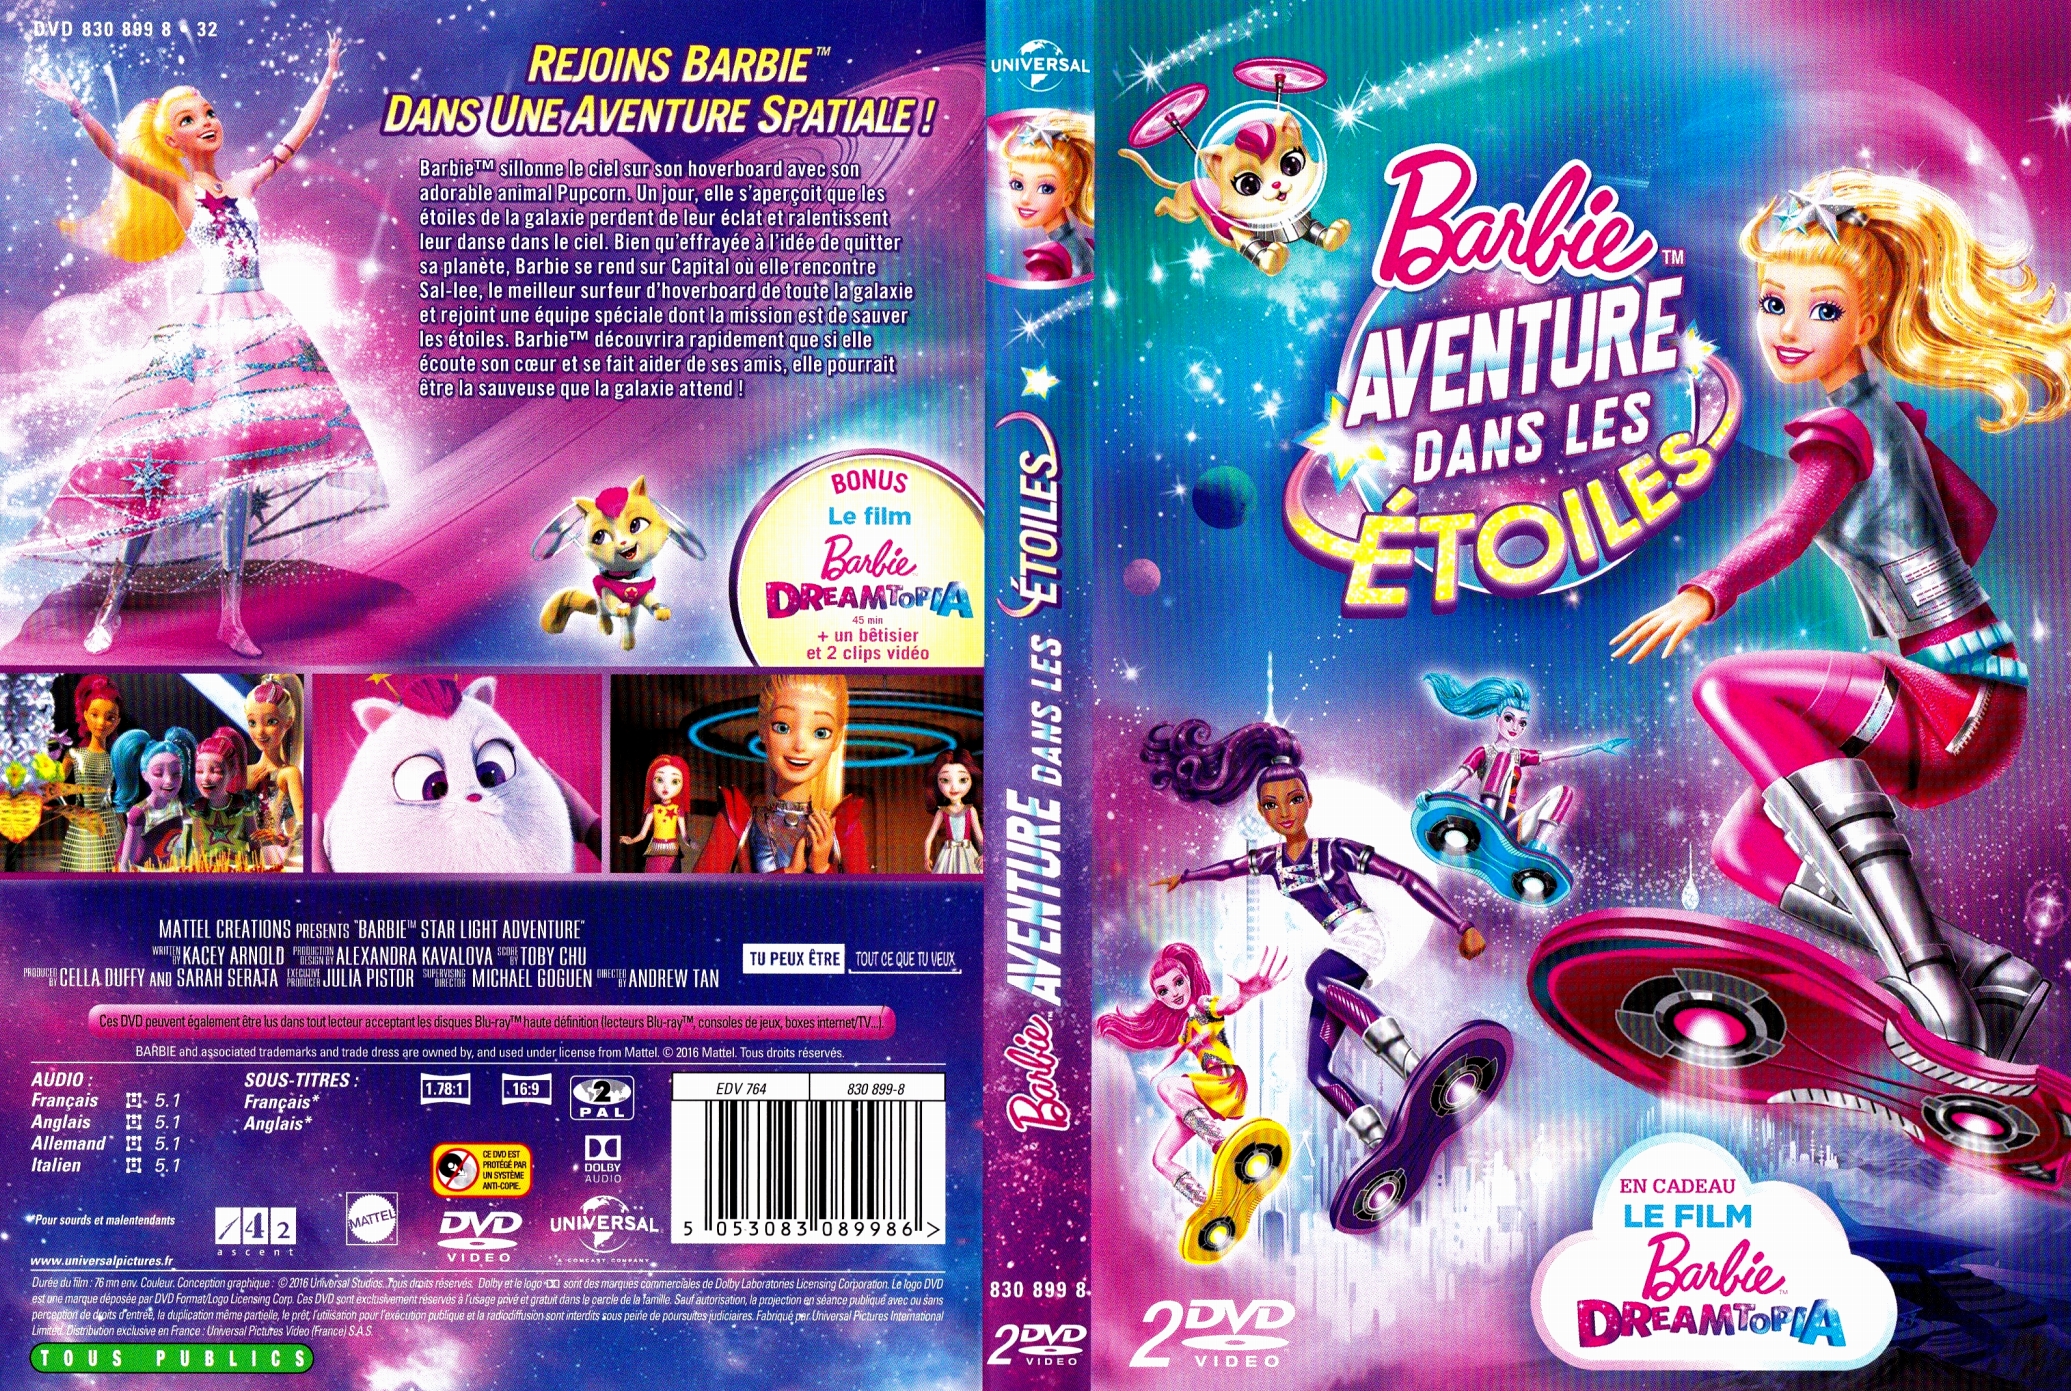 Jaquette DVD Barbie aventure dans les toiles - Dreamtopia custom